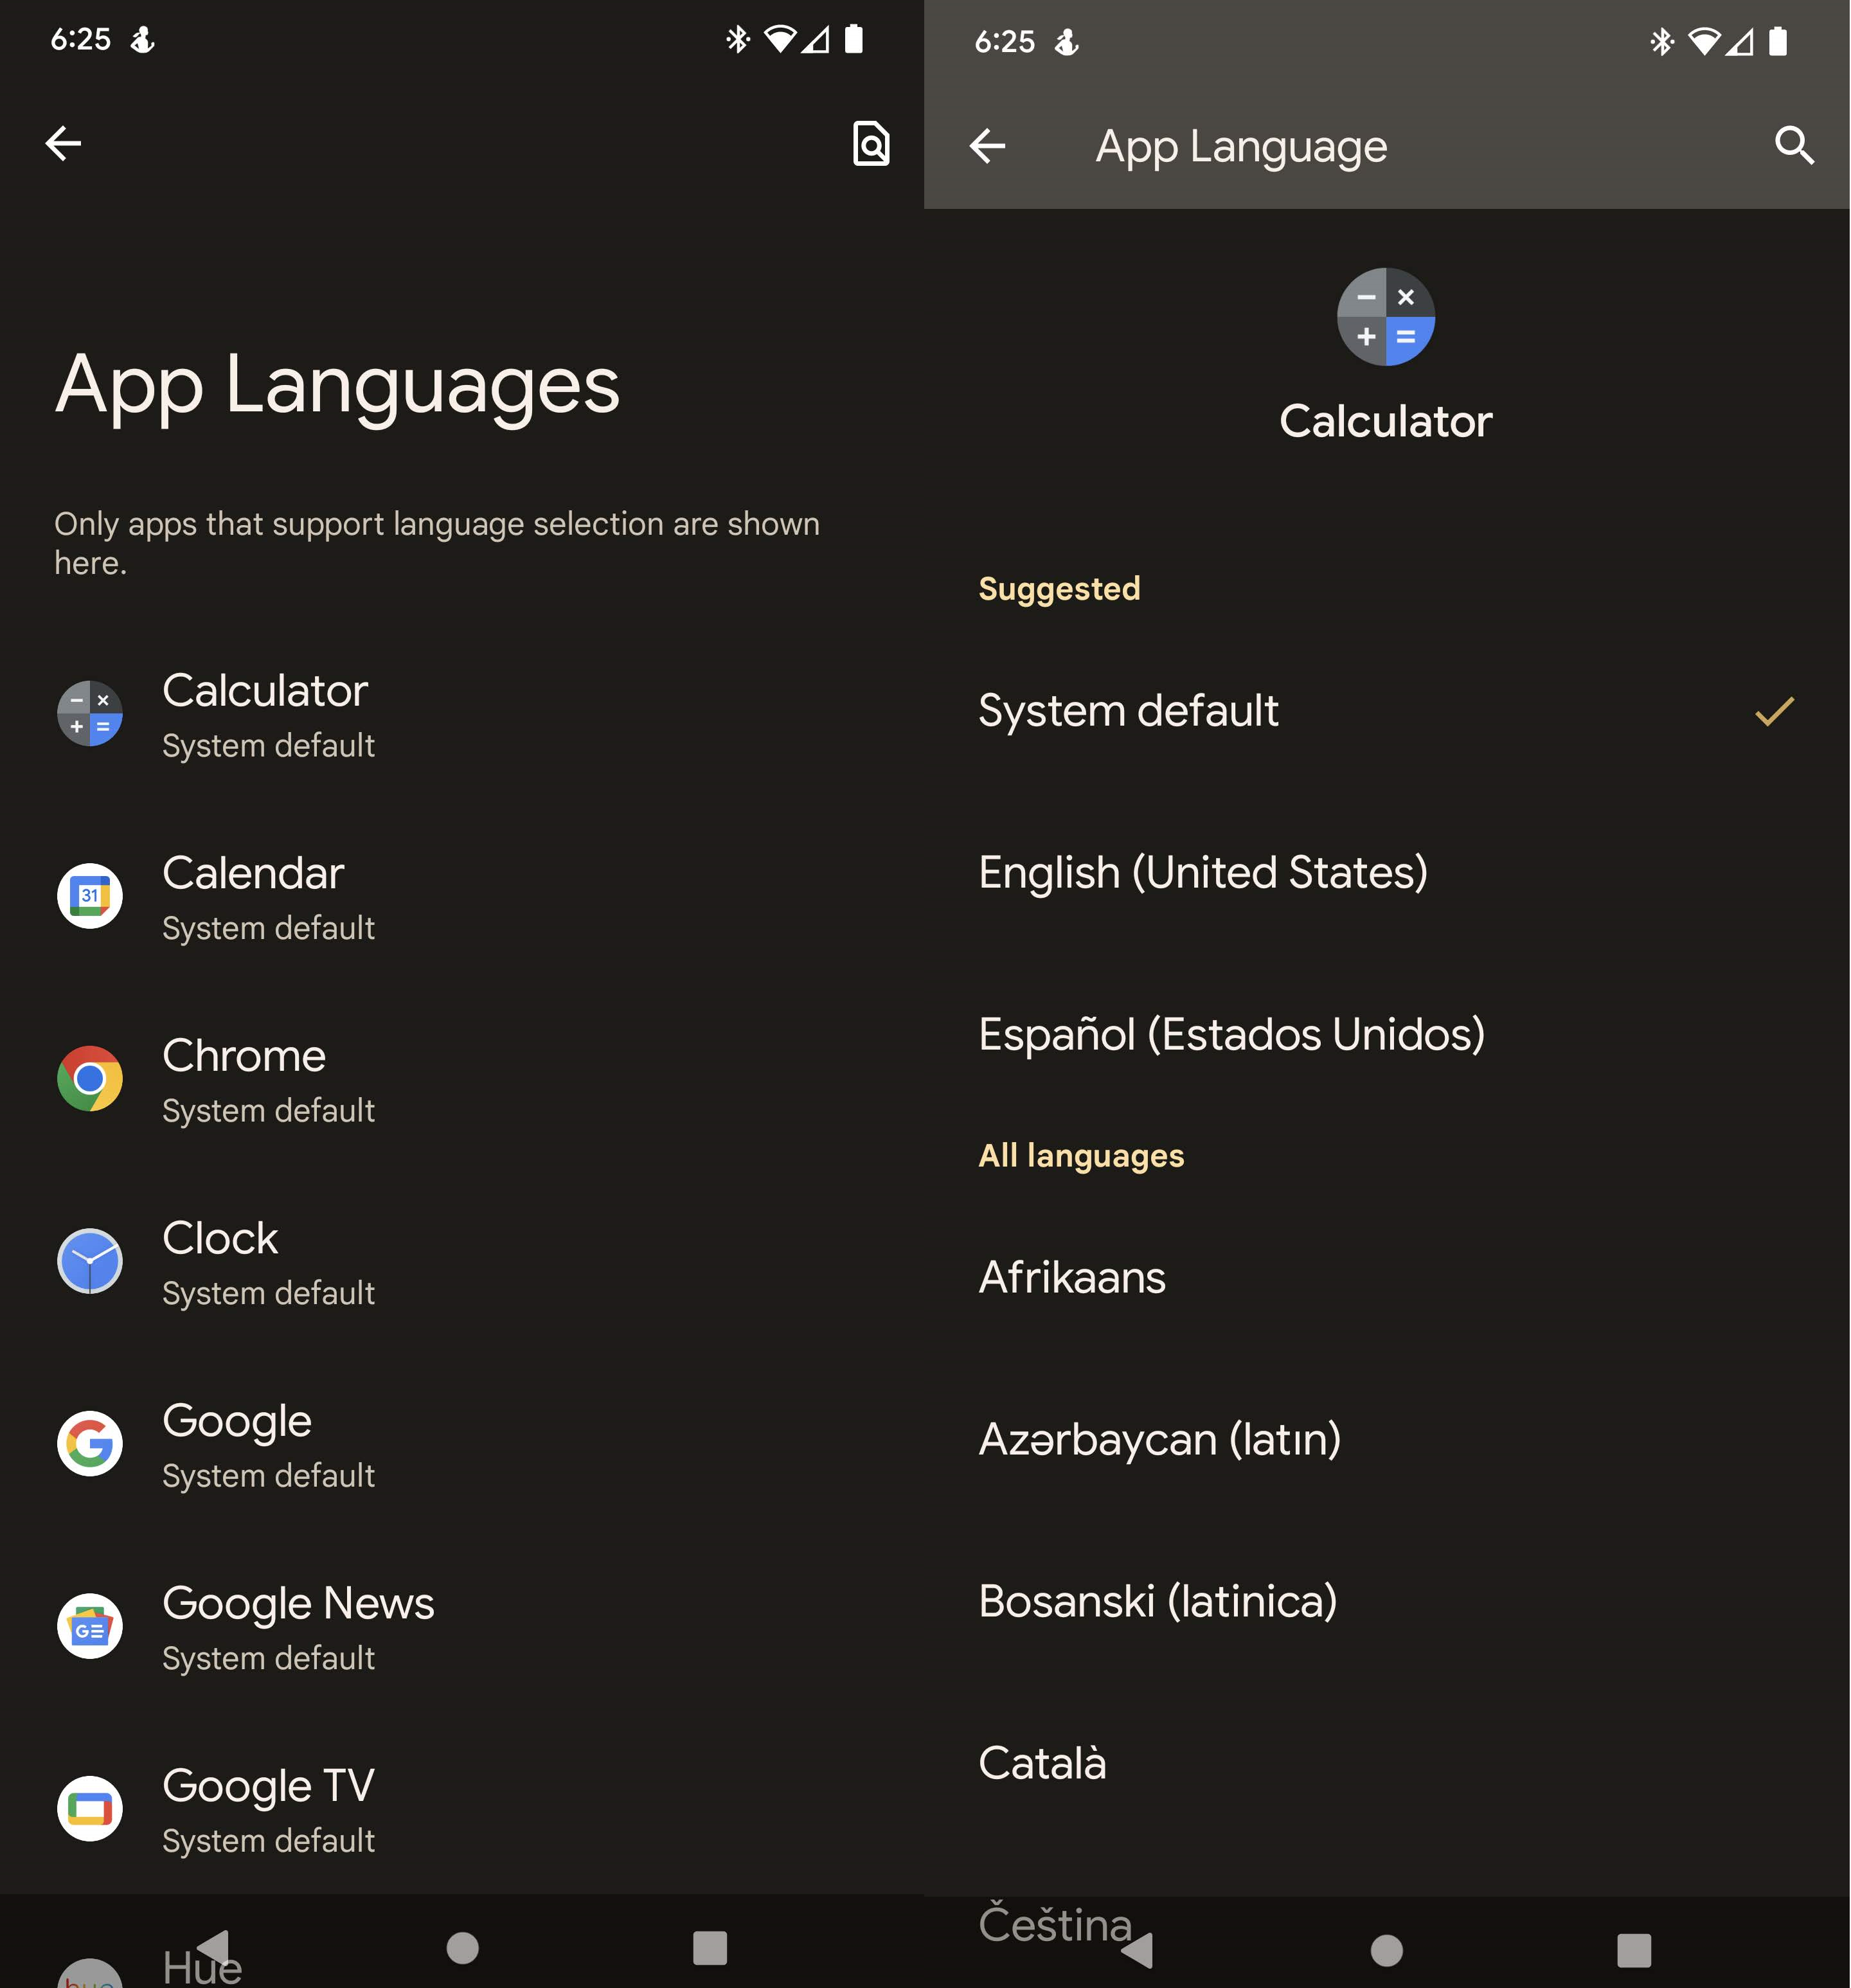 App languages